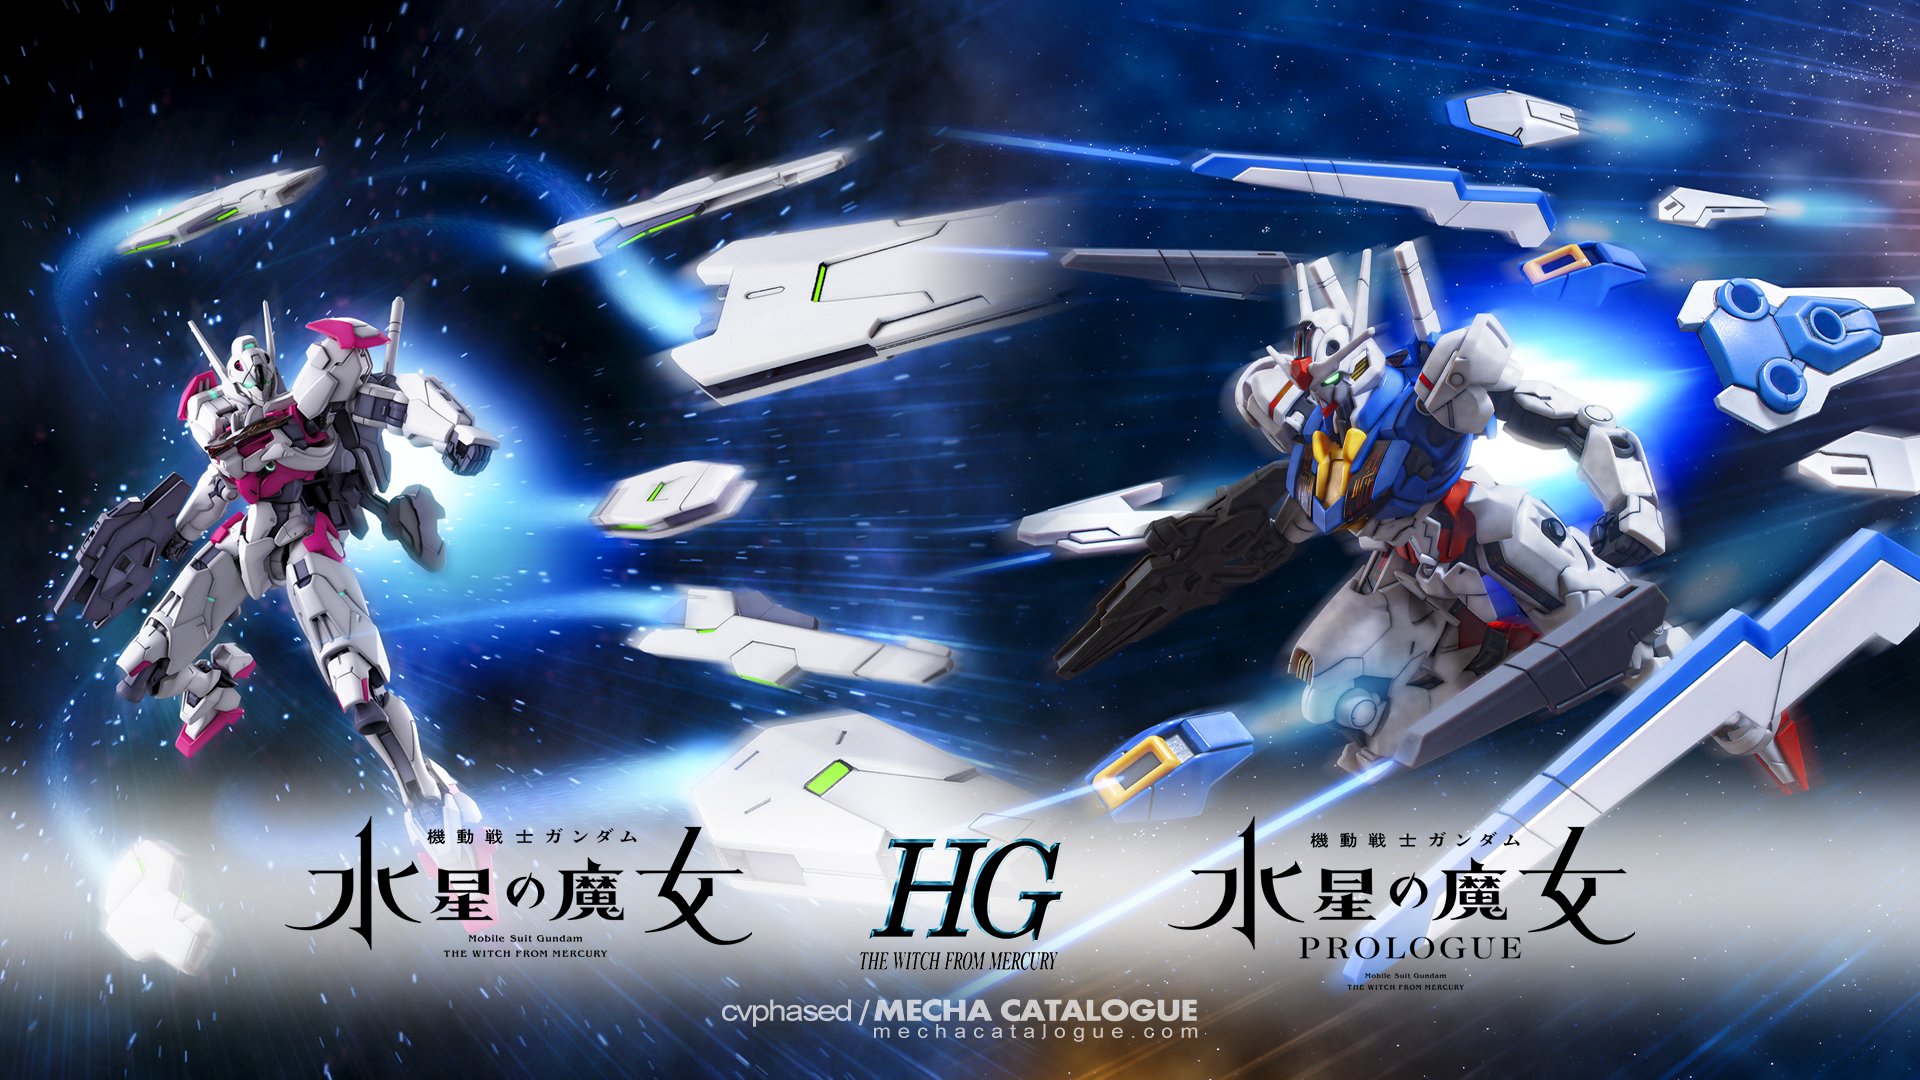 Mobile Suit Gundam THE WiTCH FROM MERCURY Gundam Aerial Super Robot Taisen  Artwork Digital Art Fan A Wallpaper  Resolution2480x3508  ID1307324   wallhacom